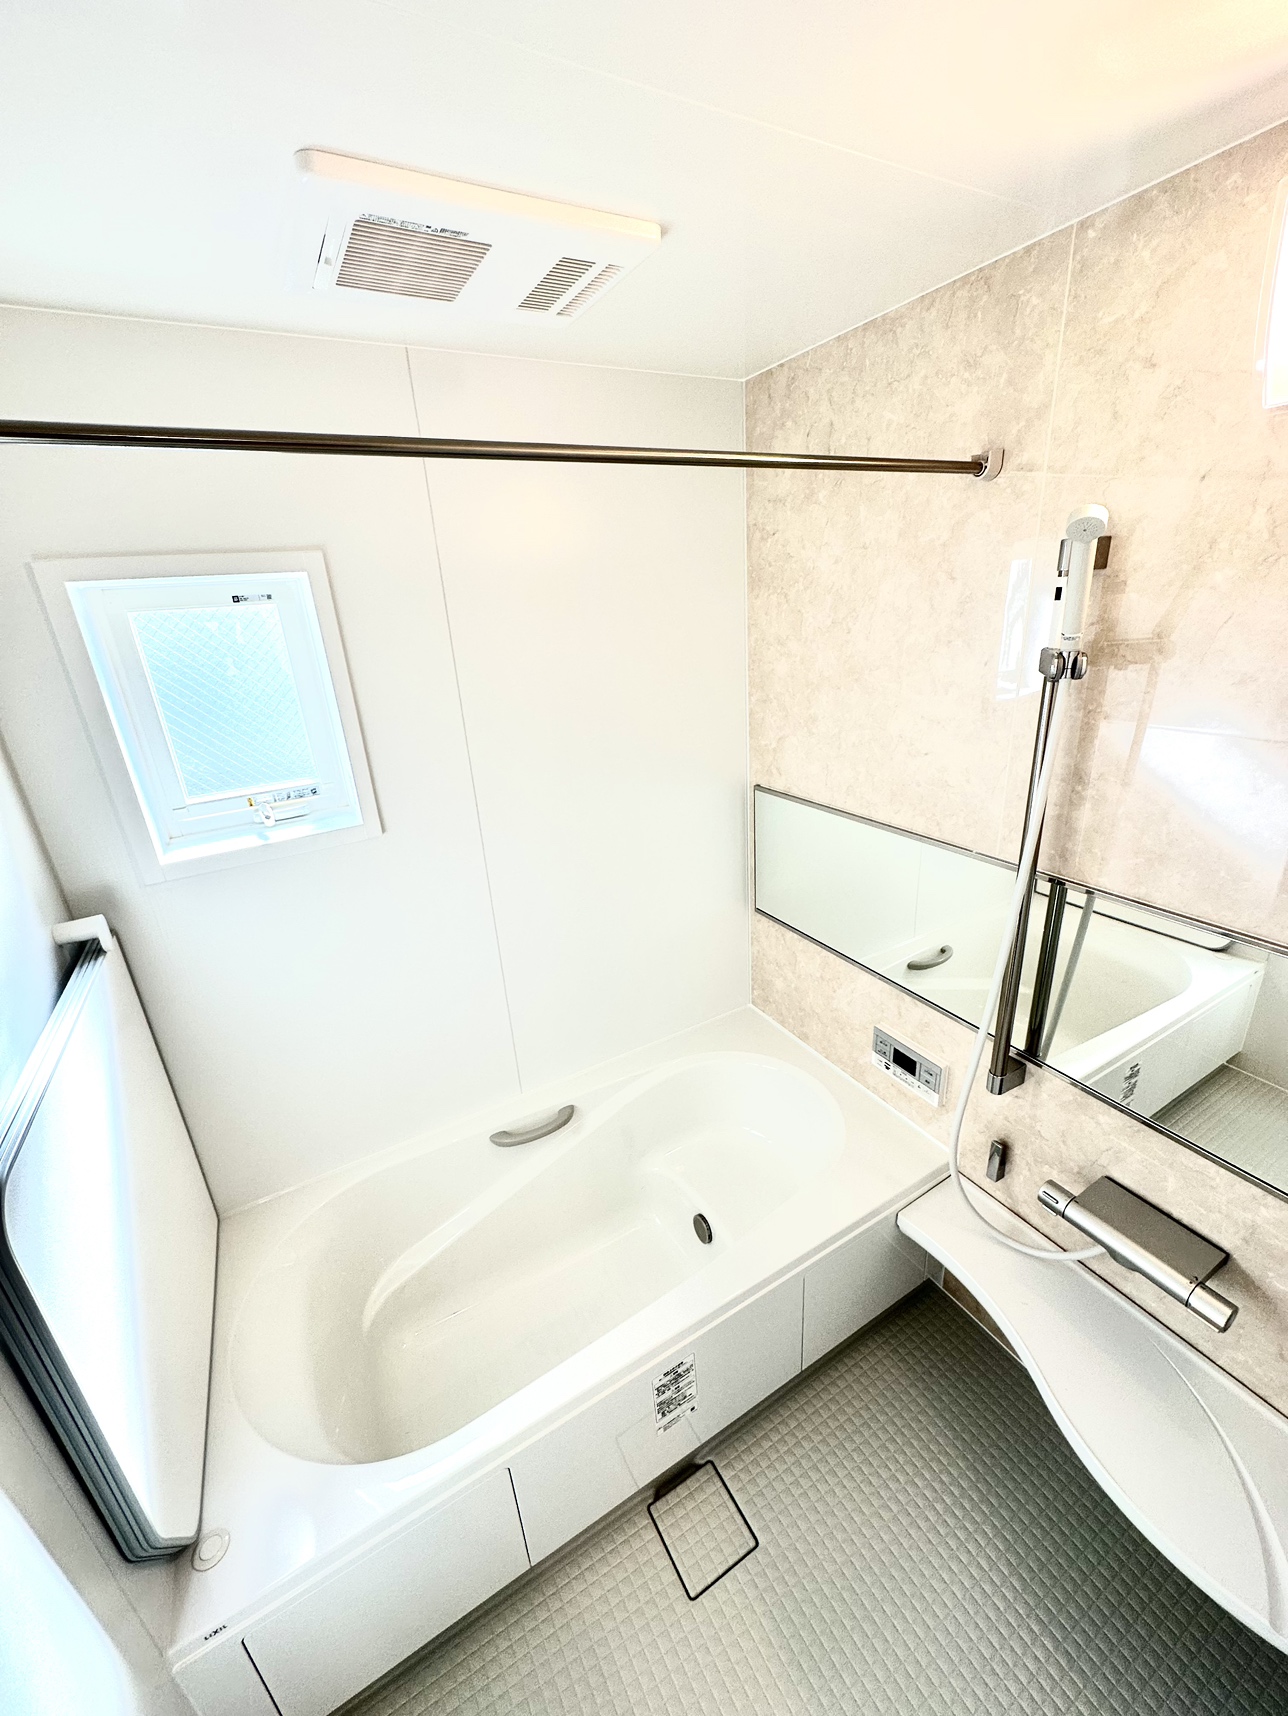 【浴室】※現地写真<br />
窓があるため、浴室乾燥機を使わなくても換気ができ、湿気のこもりにくい浴室となっております。（浴室には暖房乾燥機が付いております。）